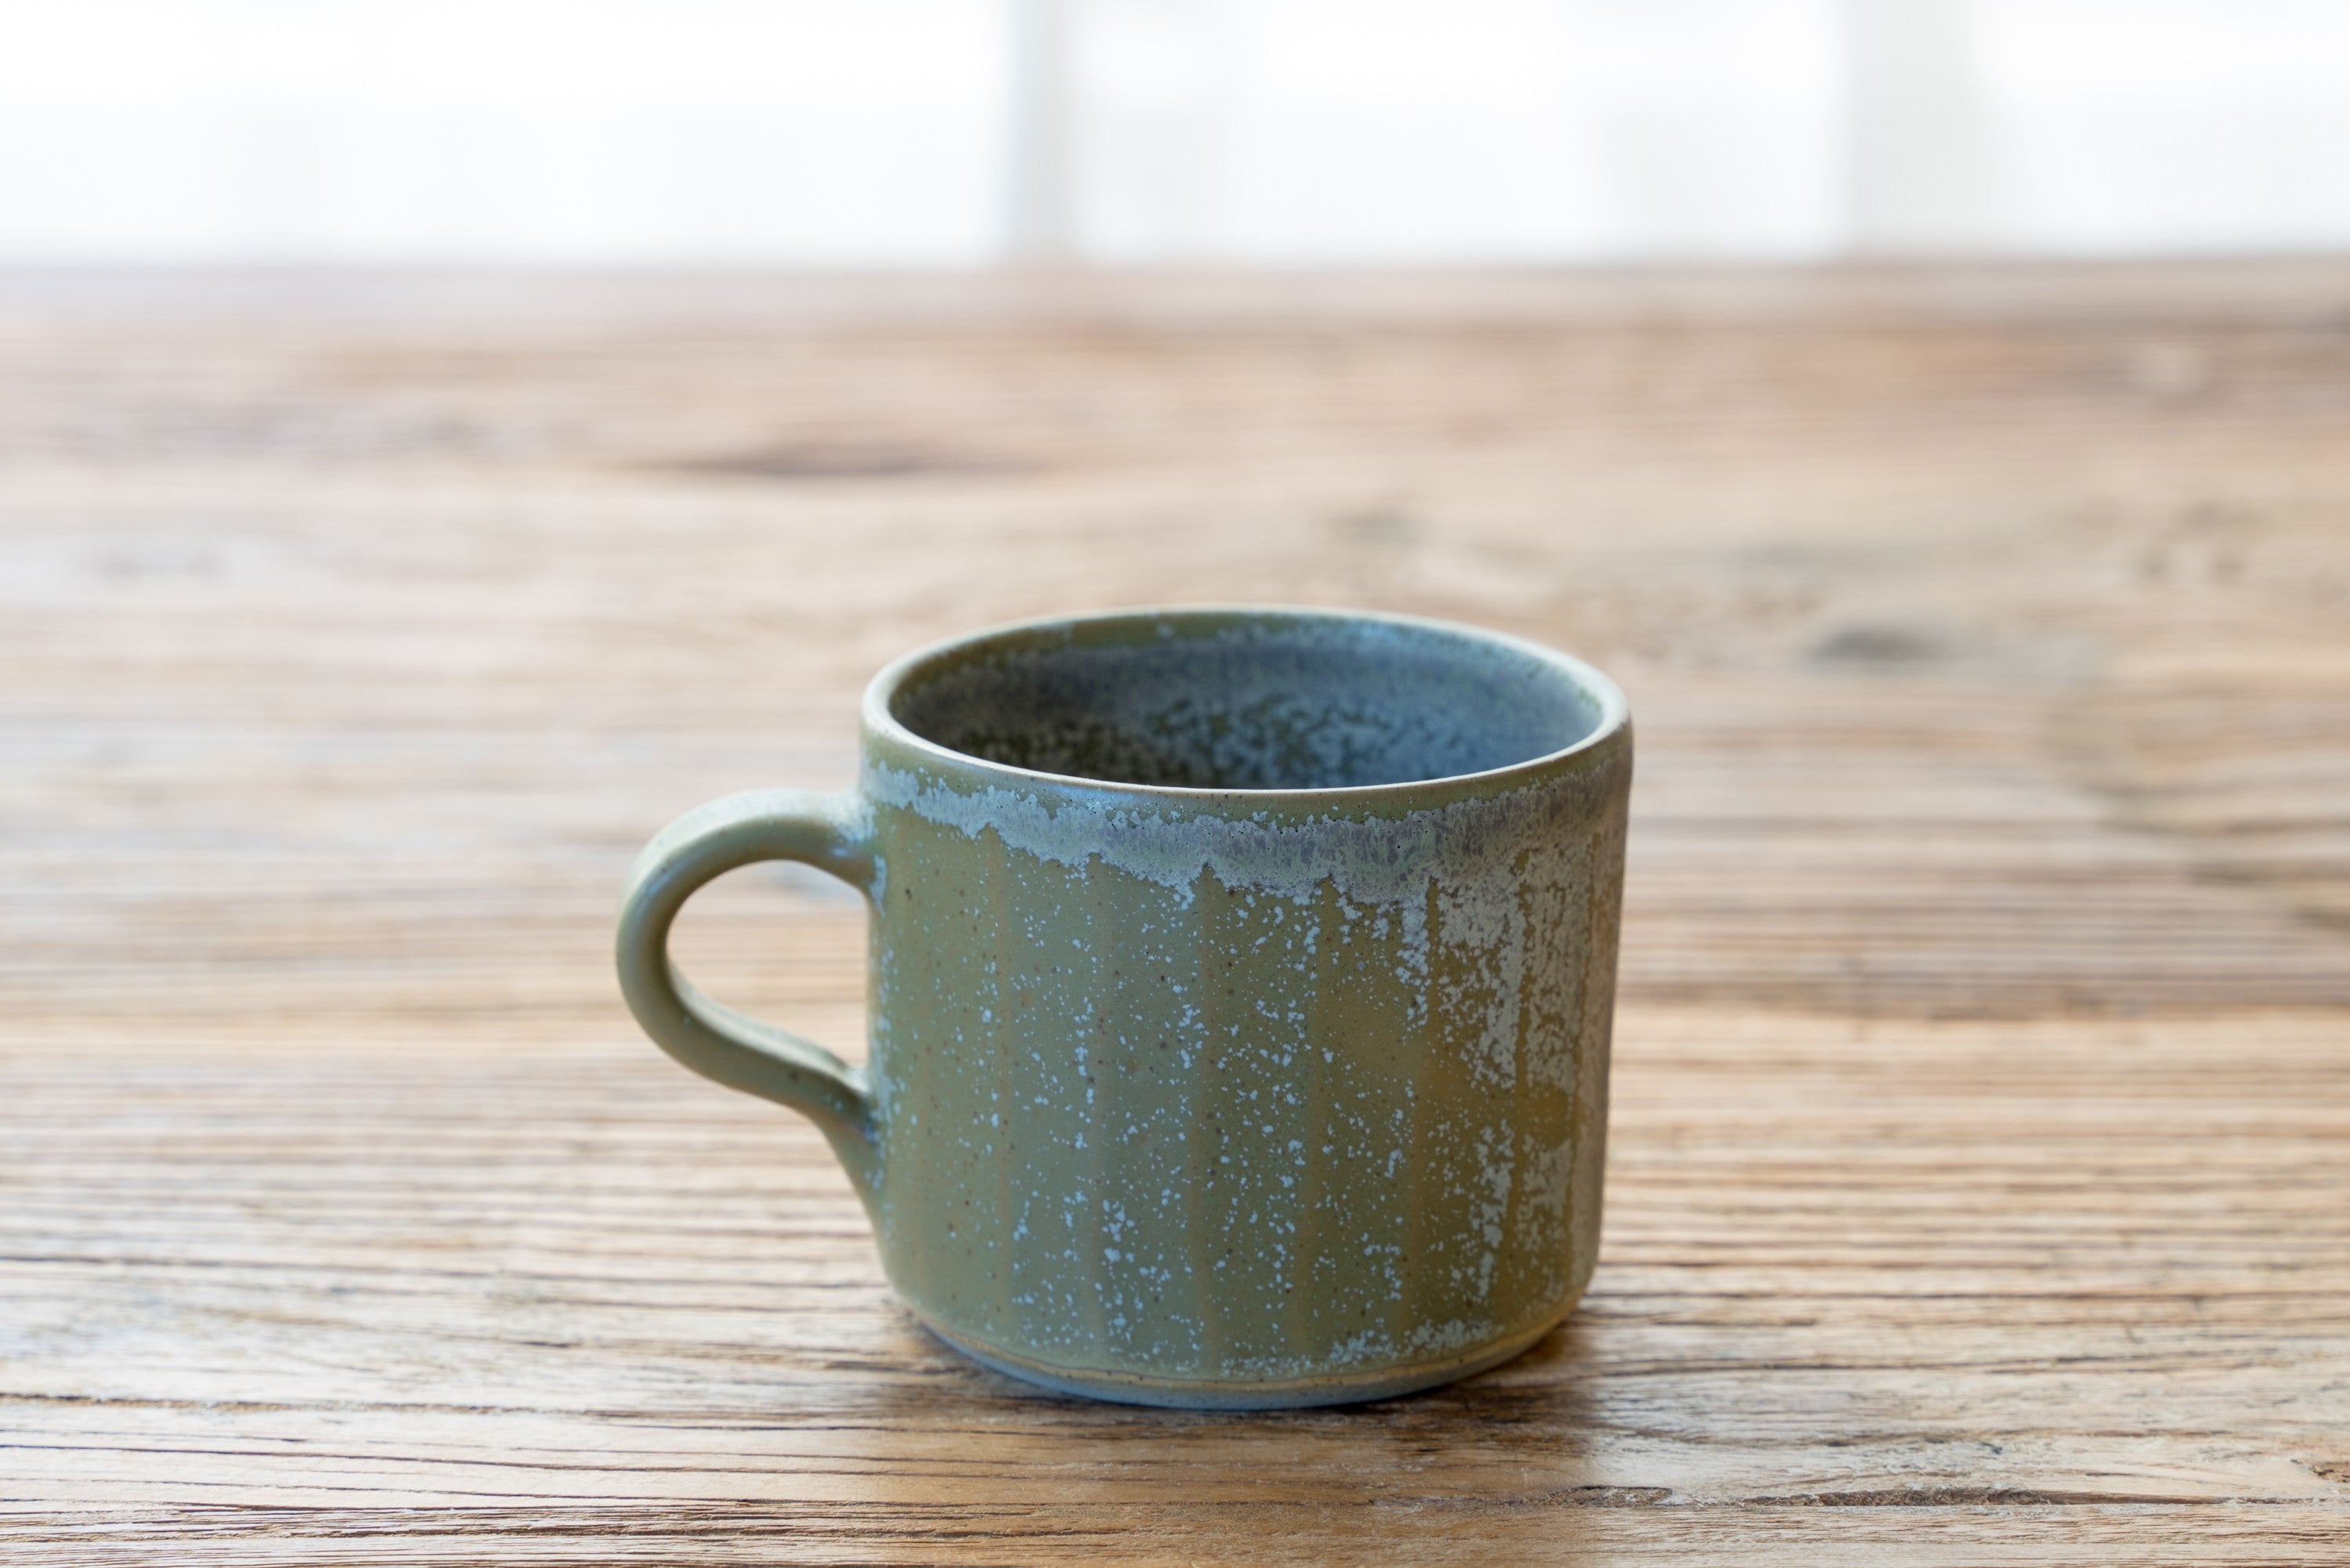 Green picket mug